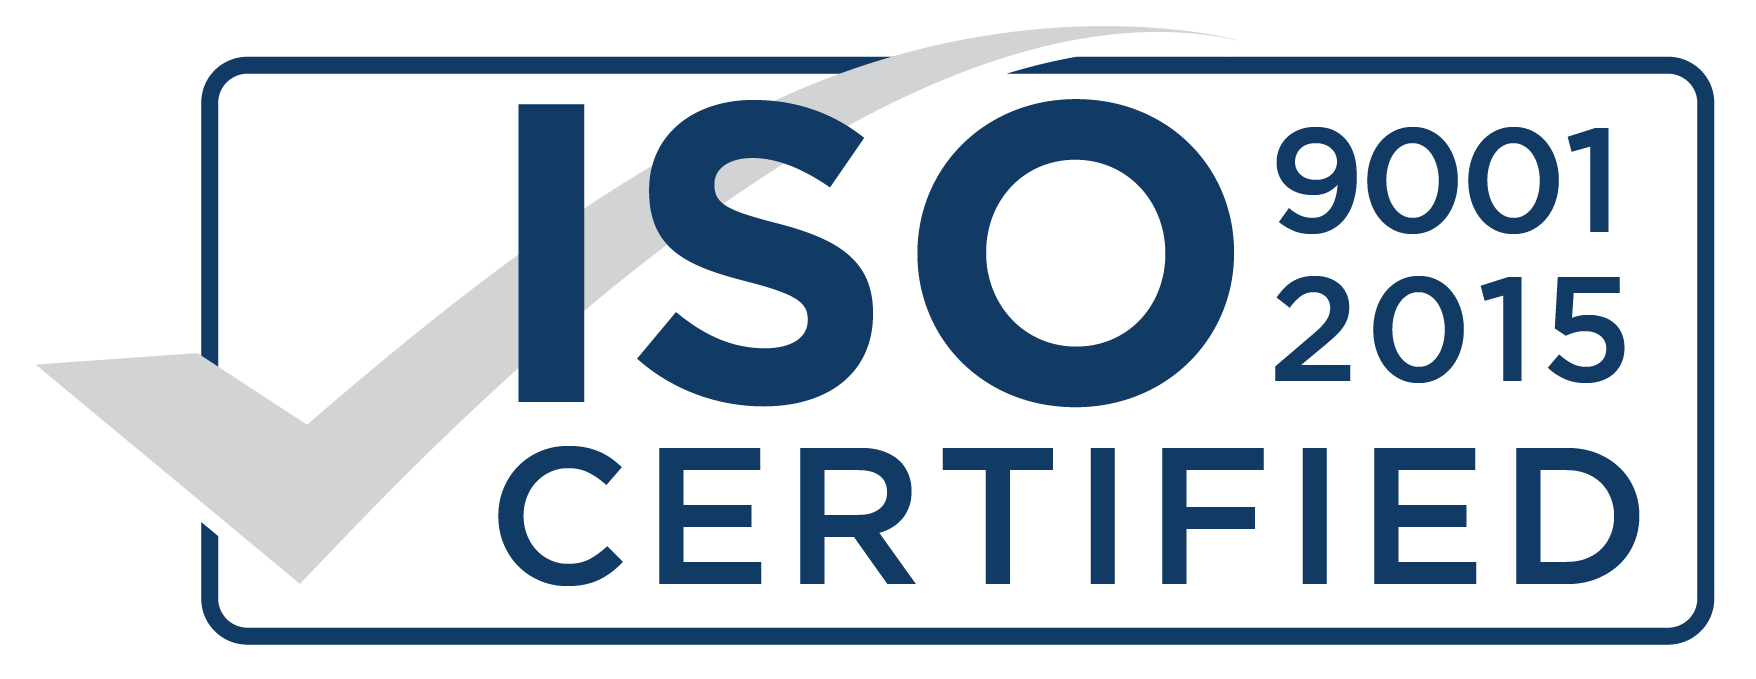 Сертификат соответствия требованиям ISO 9001:2015